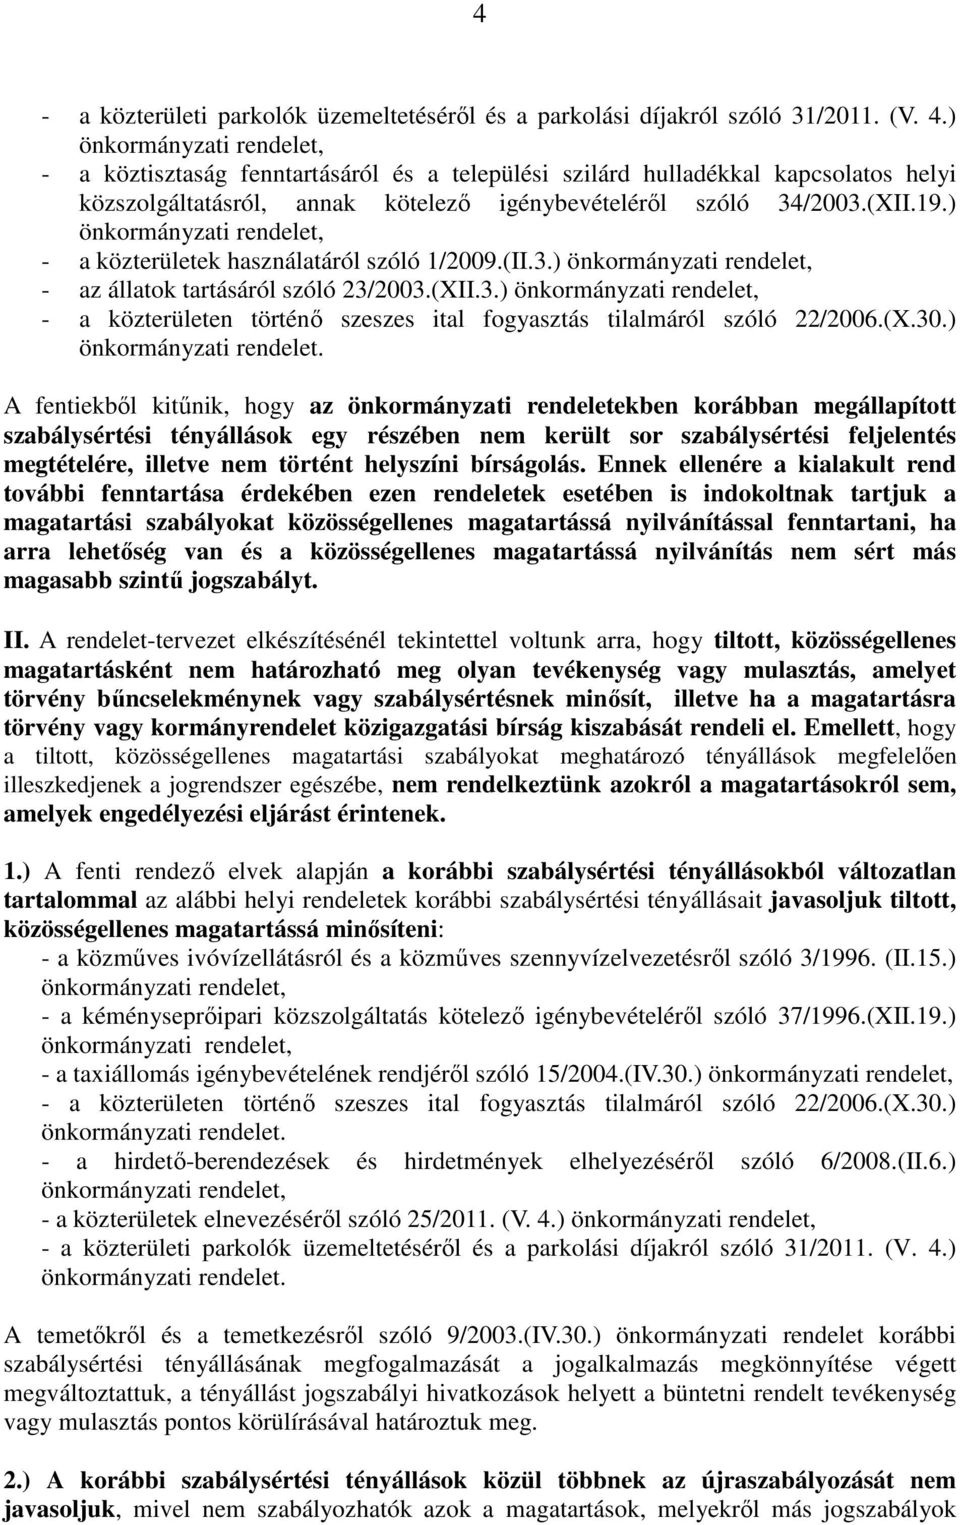 ) - a közterületek használatáról szóló 1/2009.(II.3.) - az állatok tartásáról szóló 23/2003.(XII.3.) - a közterületen történı szeszes ital fogyasztás tilalmáról szóló 22/2006.(X.30.